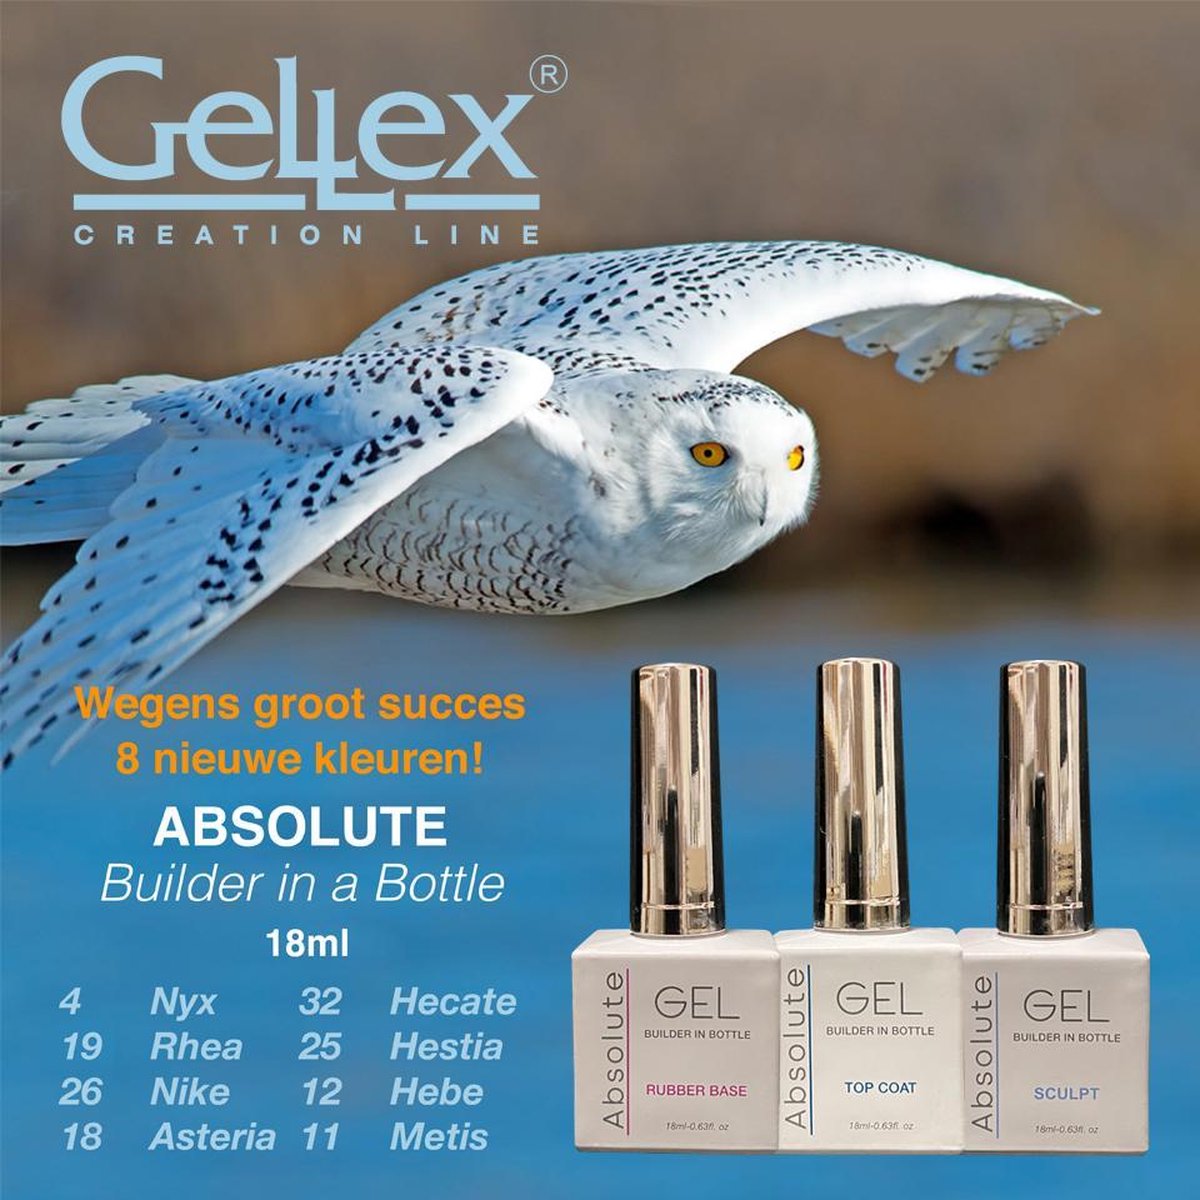 Gellex - SET Absolute Builder Gel in a bottle #19 ''Rhea''- Gel Starterspakket 3x18ml - Gel Nagellak set- Gellak